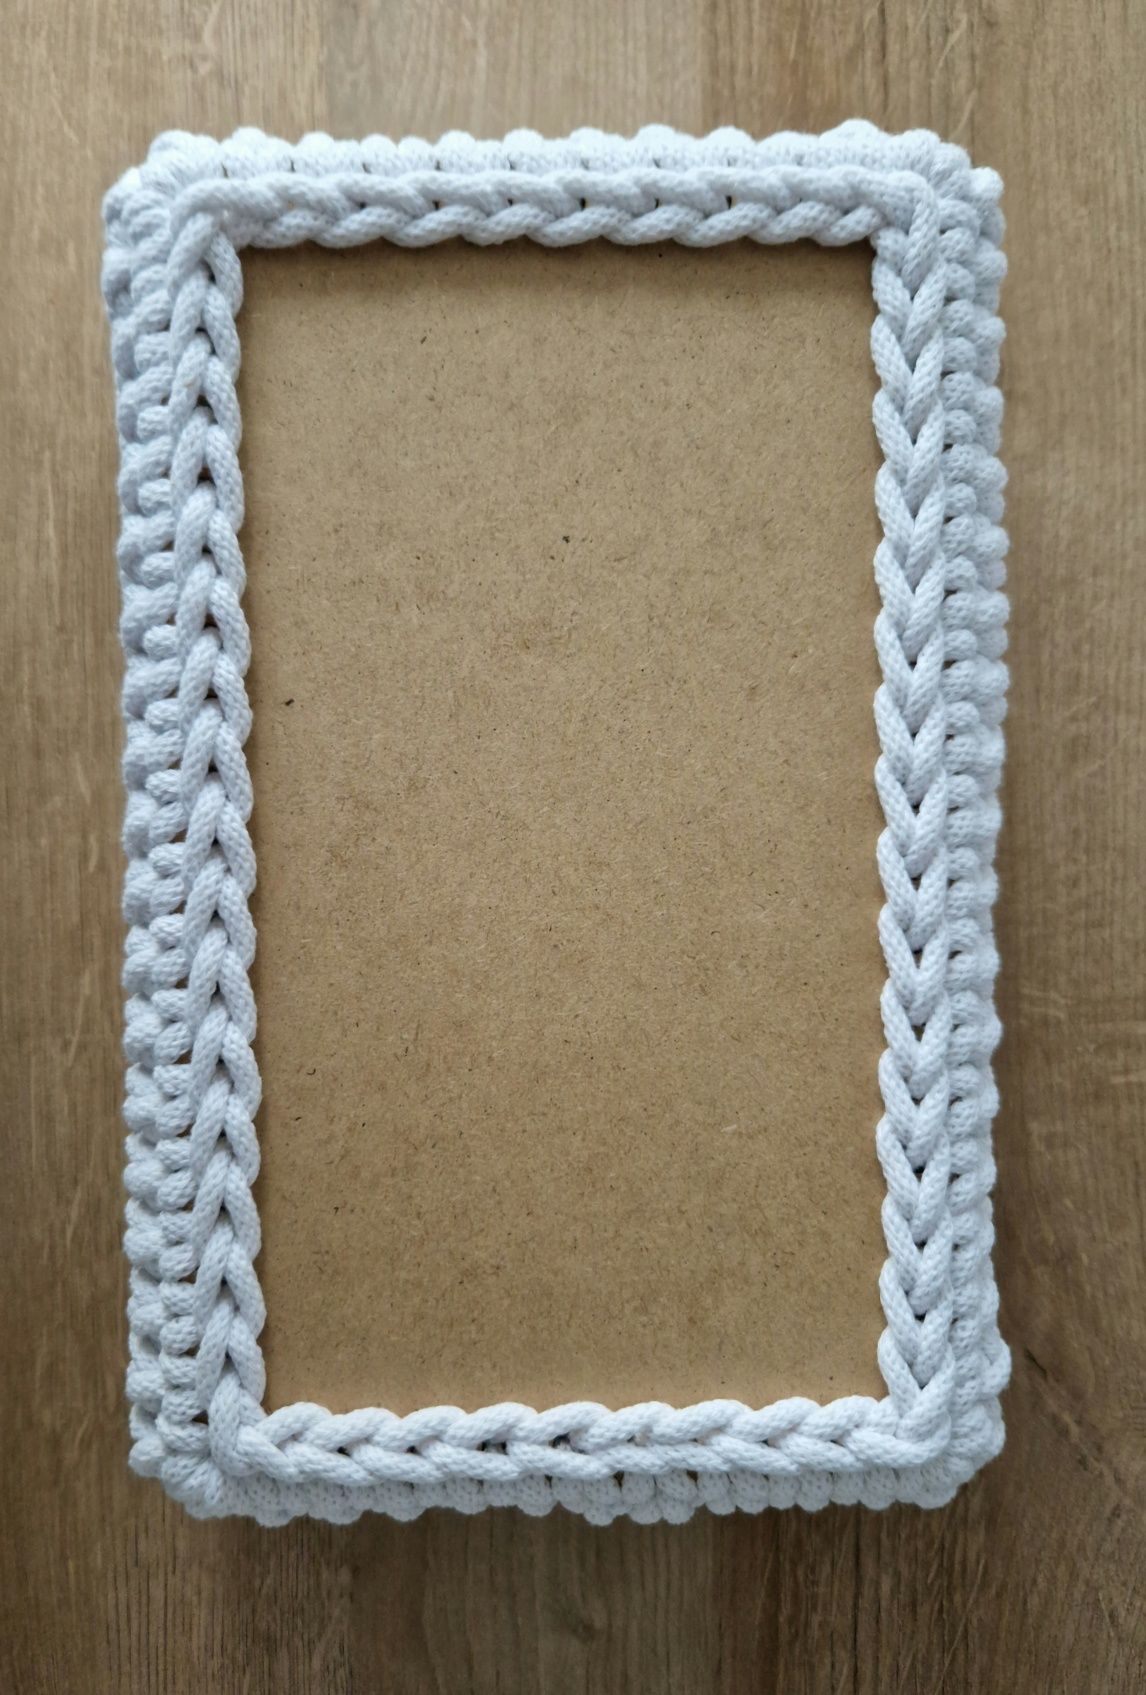 Koszyczek prostokątny ze sznurka bawełnianego/ pomysł na prezent